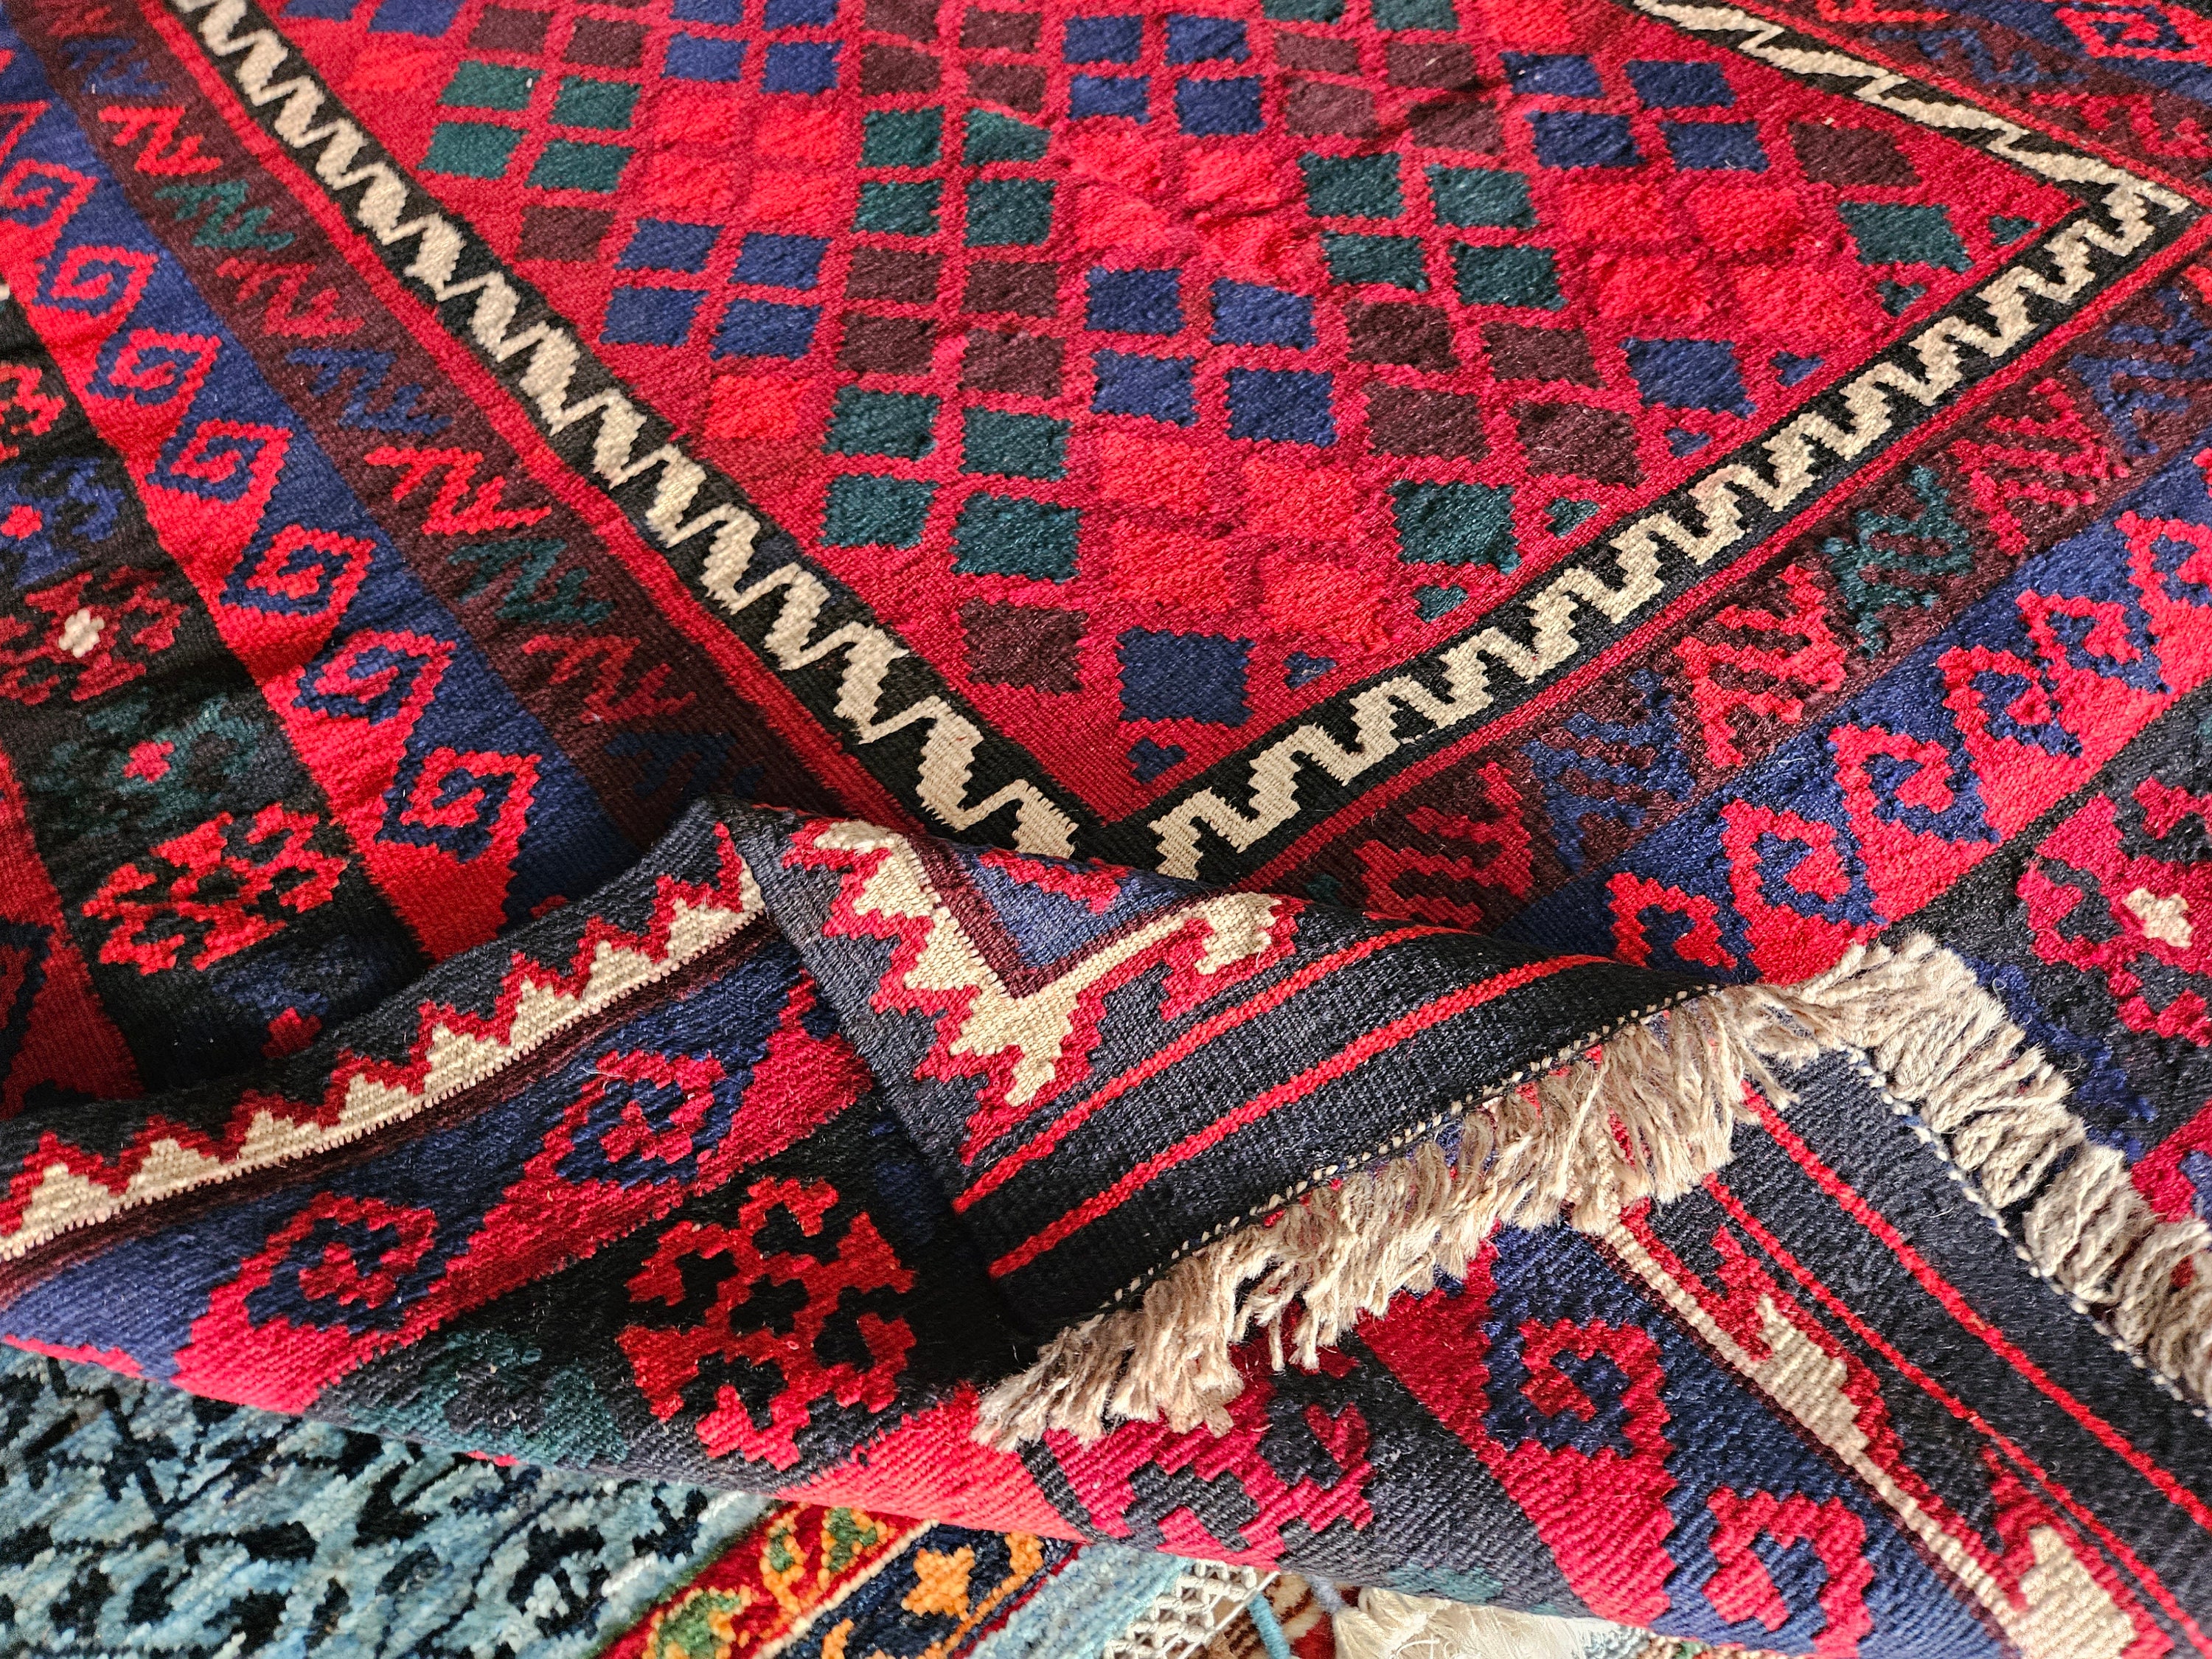 Vintage Rug,Maimana Kilim Rug,Afghan rug,Handmade Kilim Rug,Kilim rug Runner,Red Runner,Vintage,Wool Runner,Rugs,moroccan rug,bohemian rug